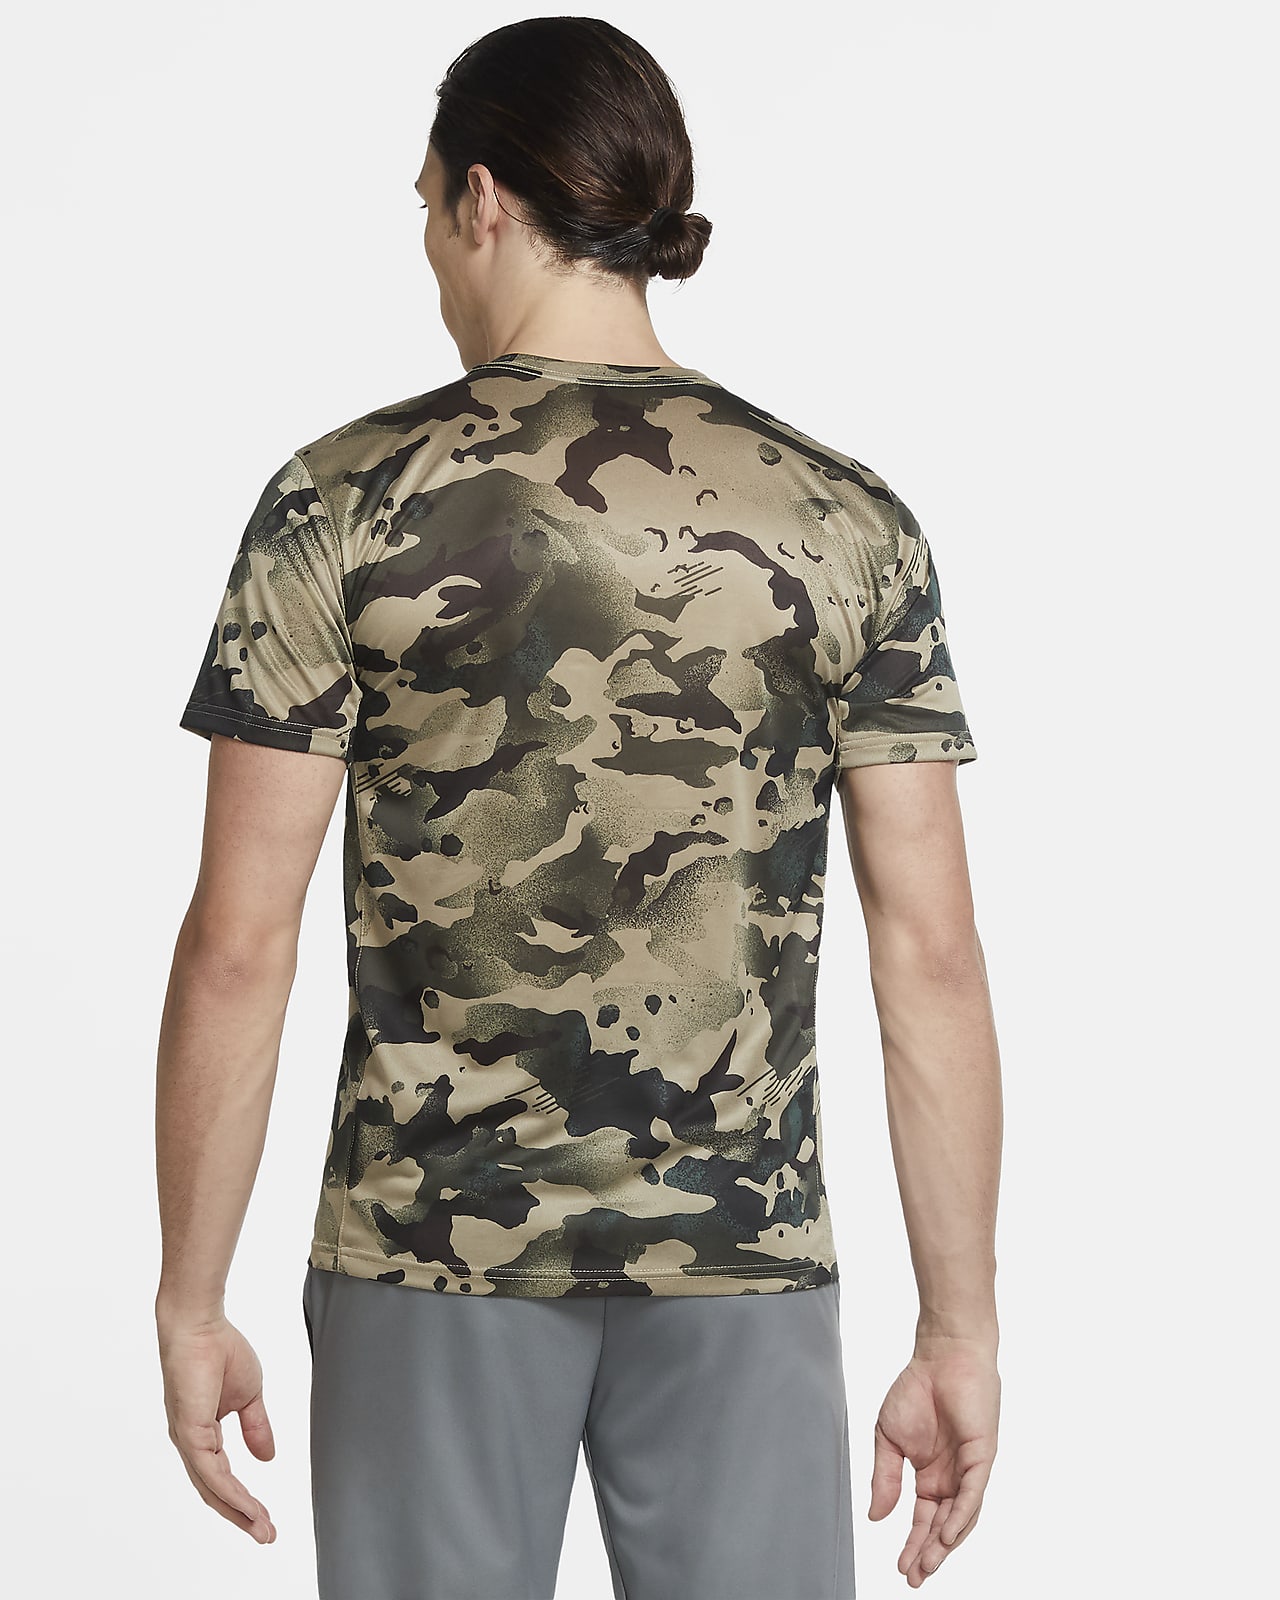 T-shirt Noir Homme Nike Camo pas cher